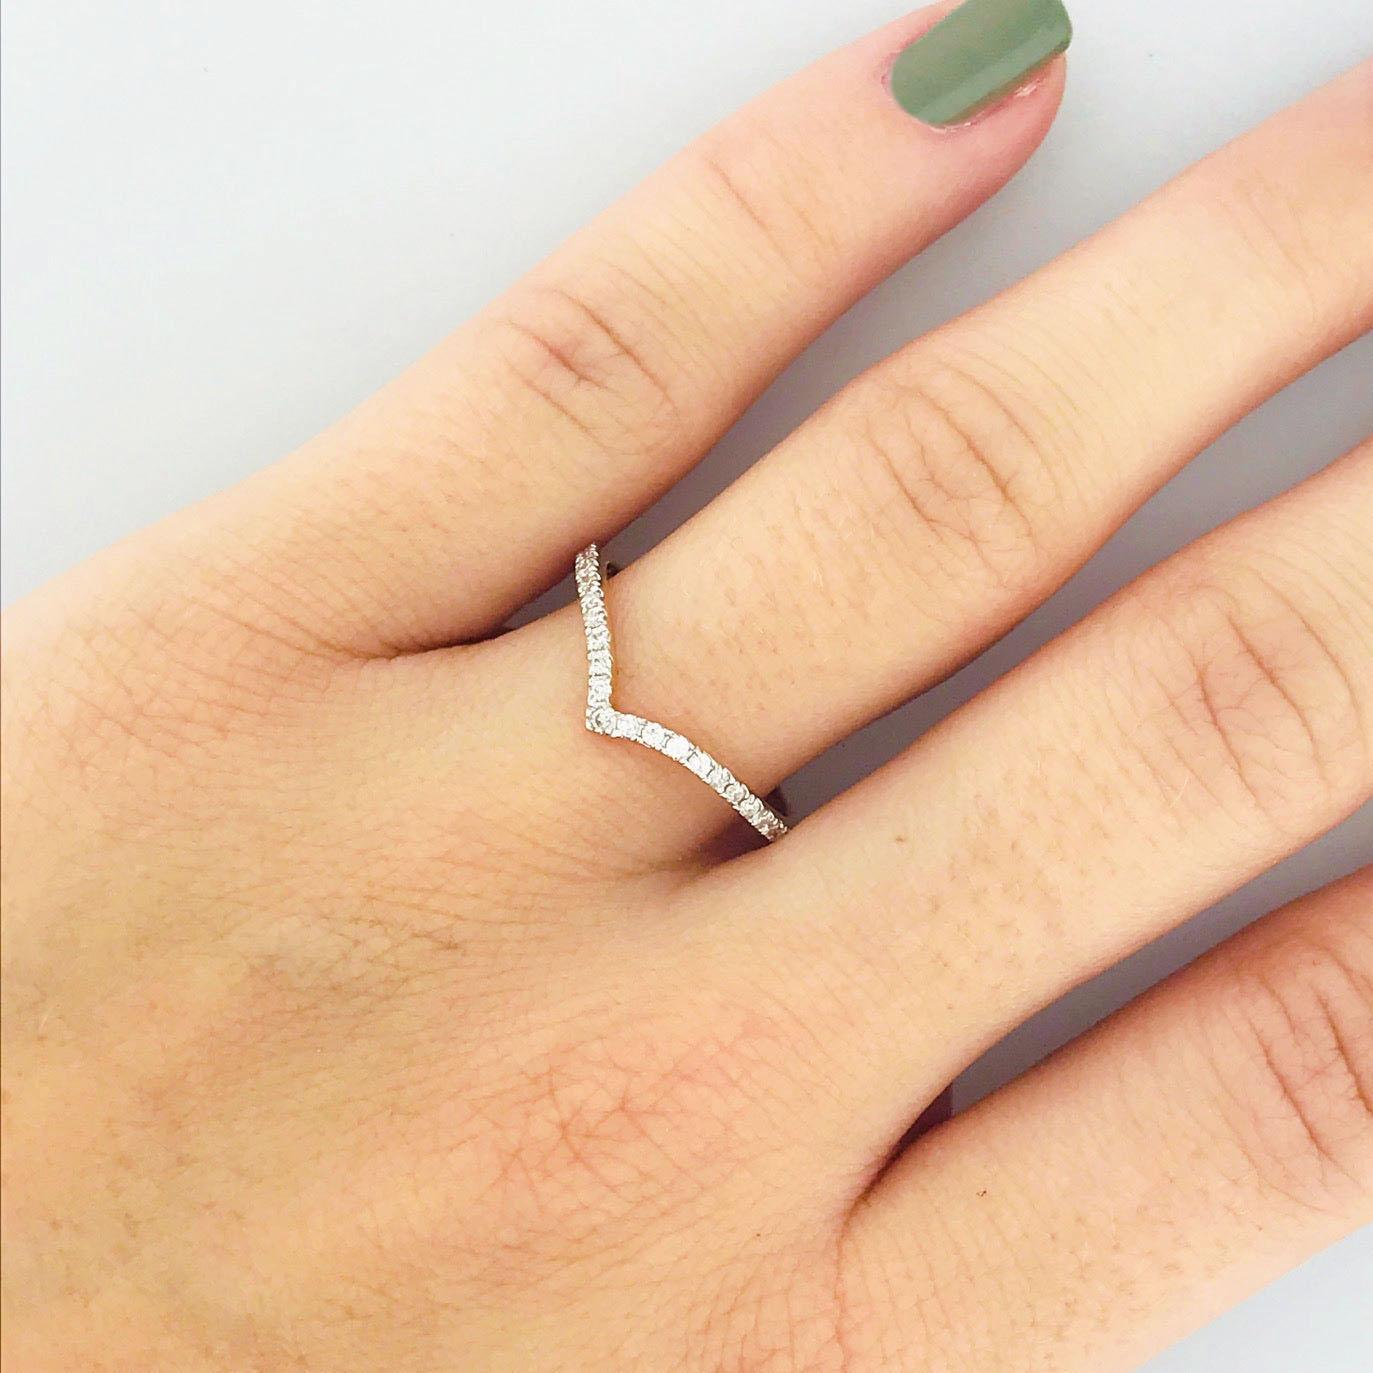 Diamant-V-Ringe sind ein fabelhafter Stapelring für Ihren Verlobungsring! Dieser Bandring ist stilvoll, modern und hat eine schöne klare Linie Minimalismus. Es ist ein großartiges Stück für alle, die einen zierlichen Look lieben oder ihre